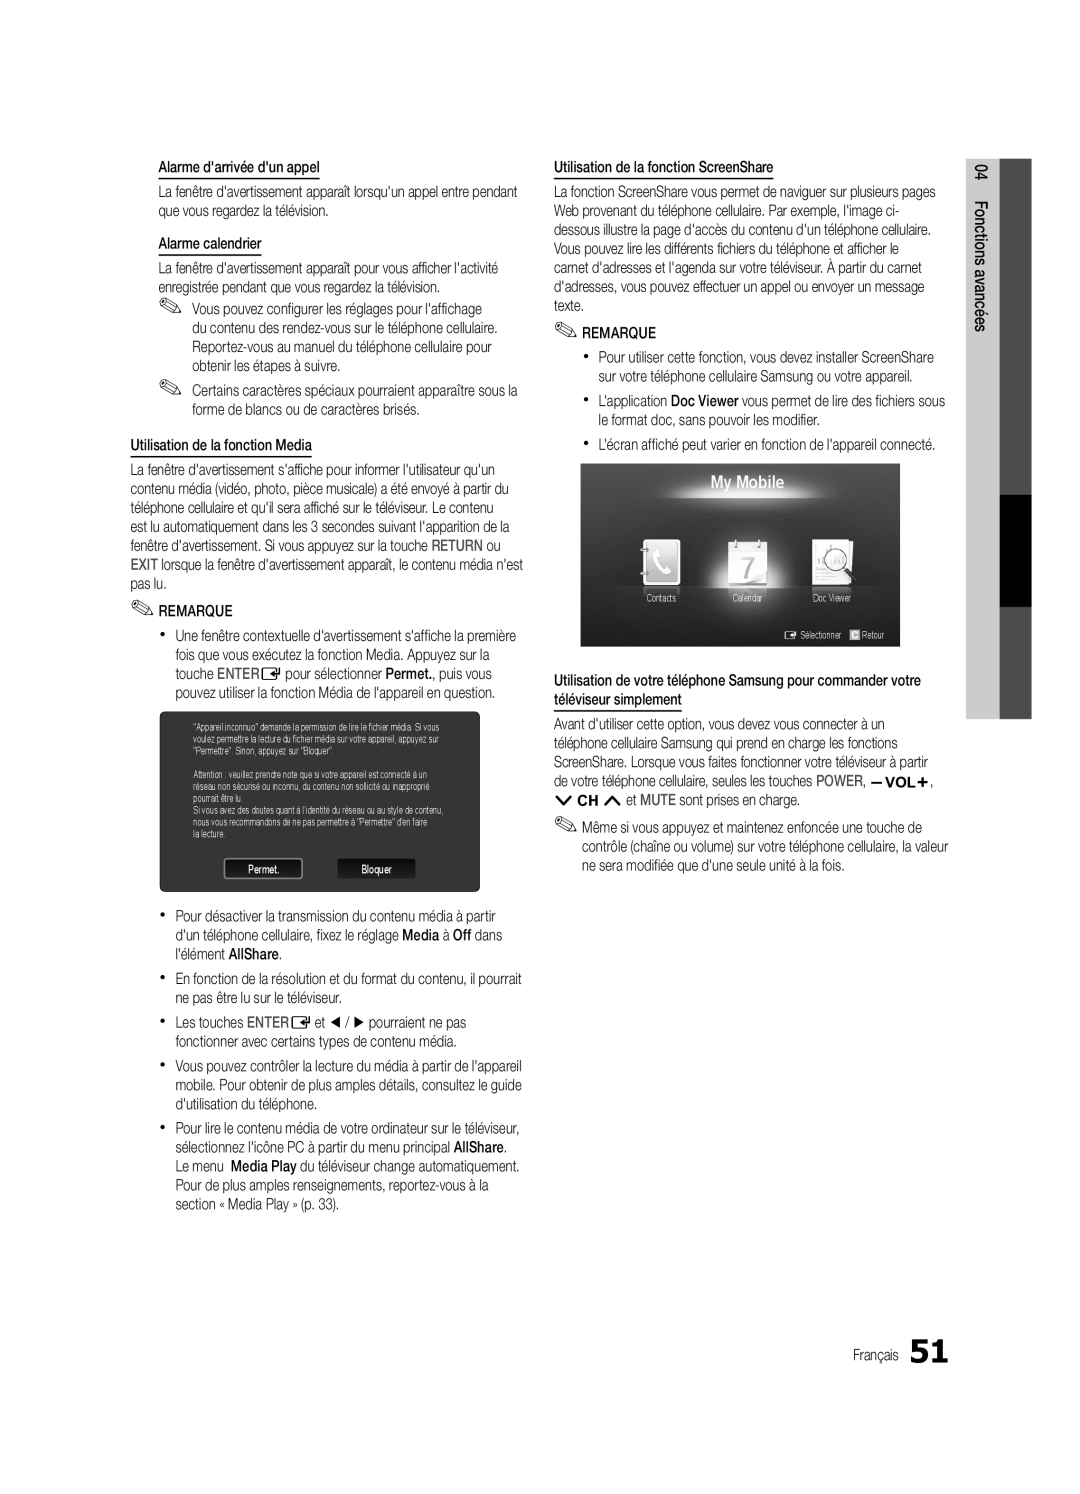 Samsung UC6500-ZC, BN68-02711B-04 user manual My Mobile, xx Lécran affiché peut varier en fonction de lappareil connecté 